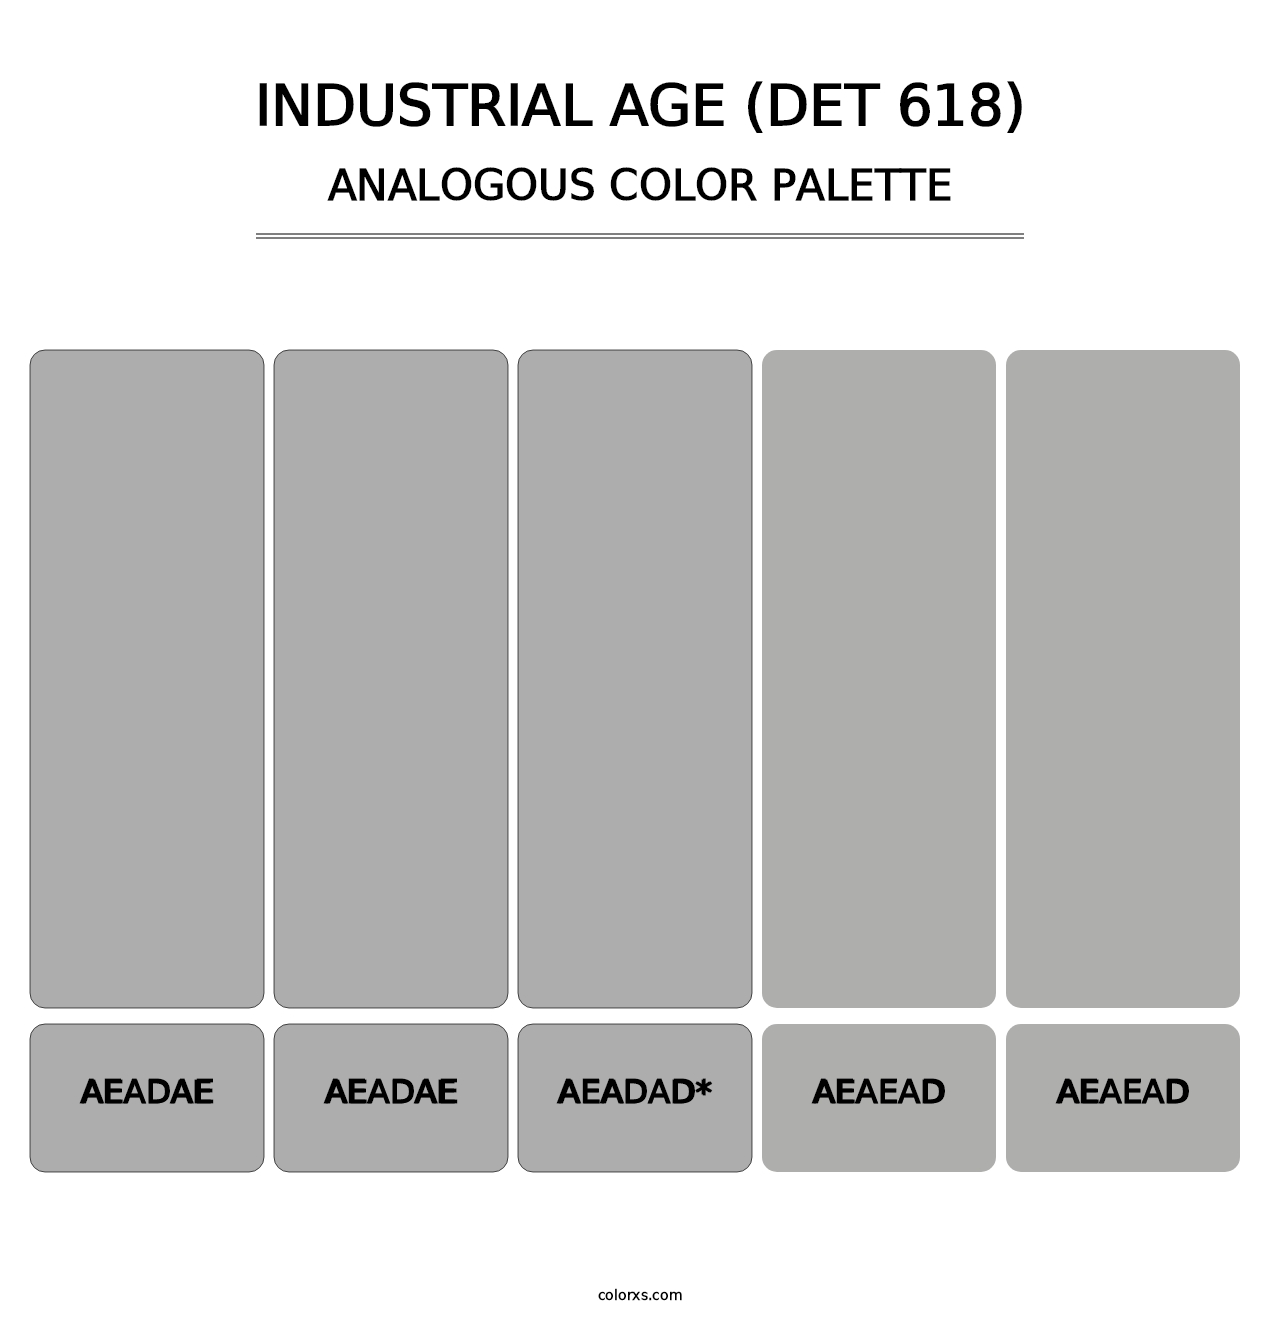 Industrial Age (DET 618) - Analogous Color Palette